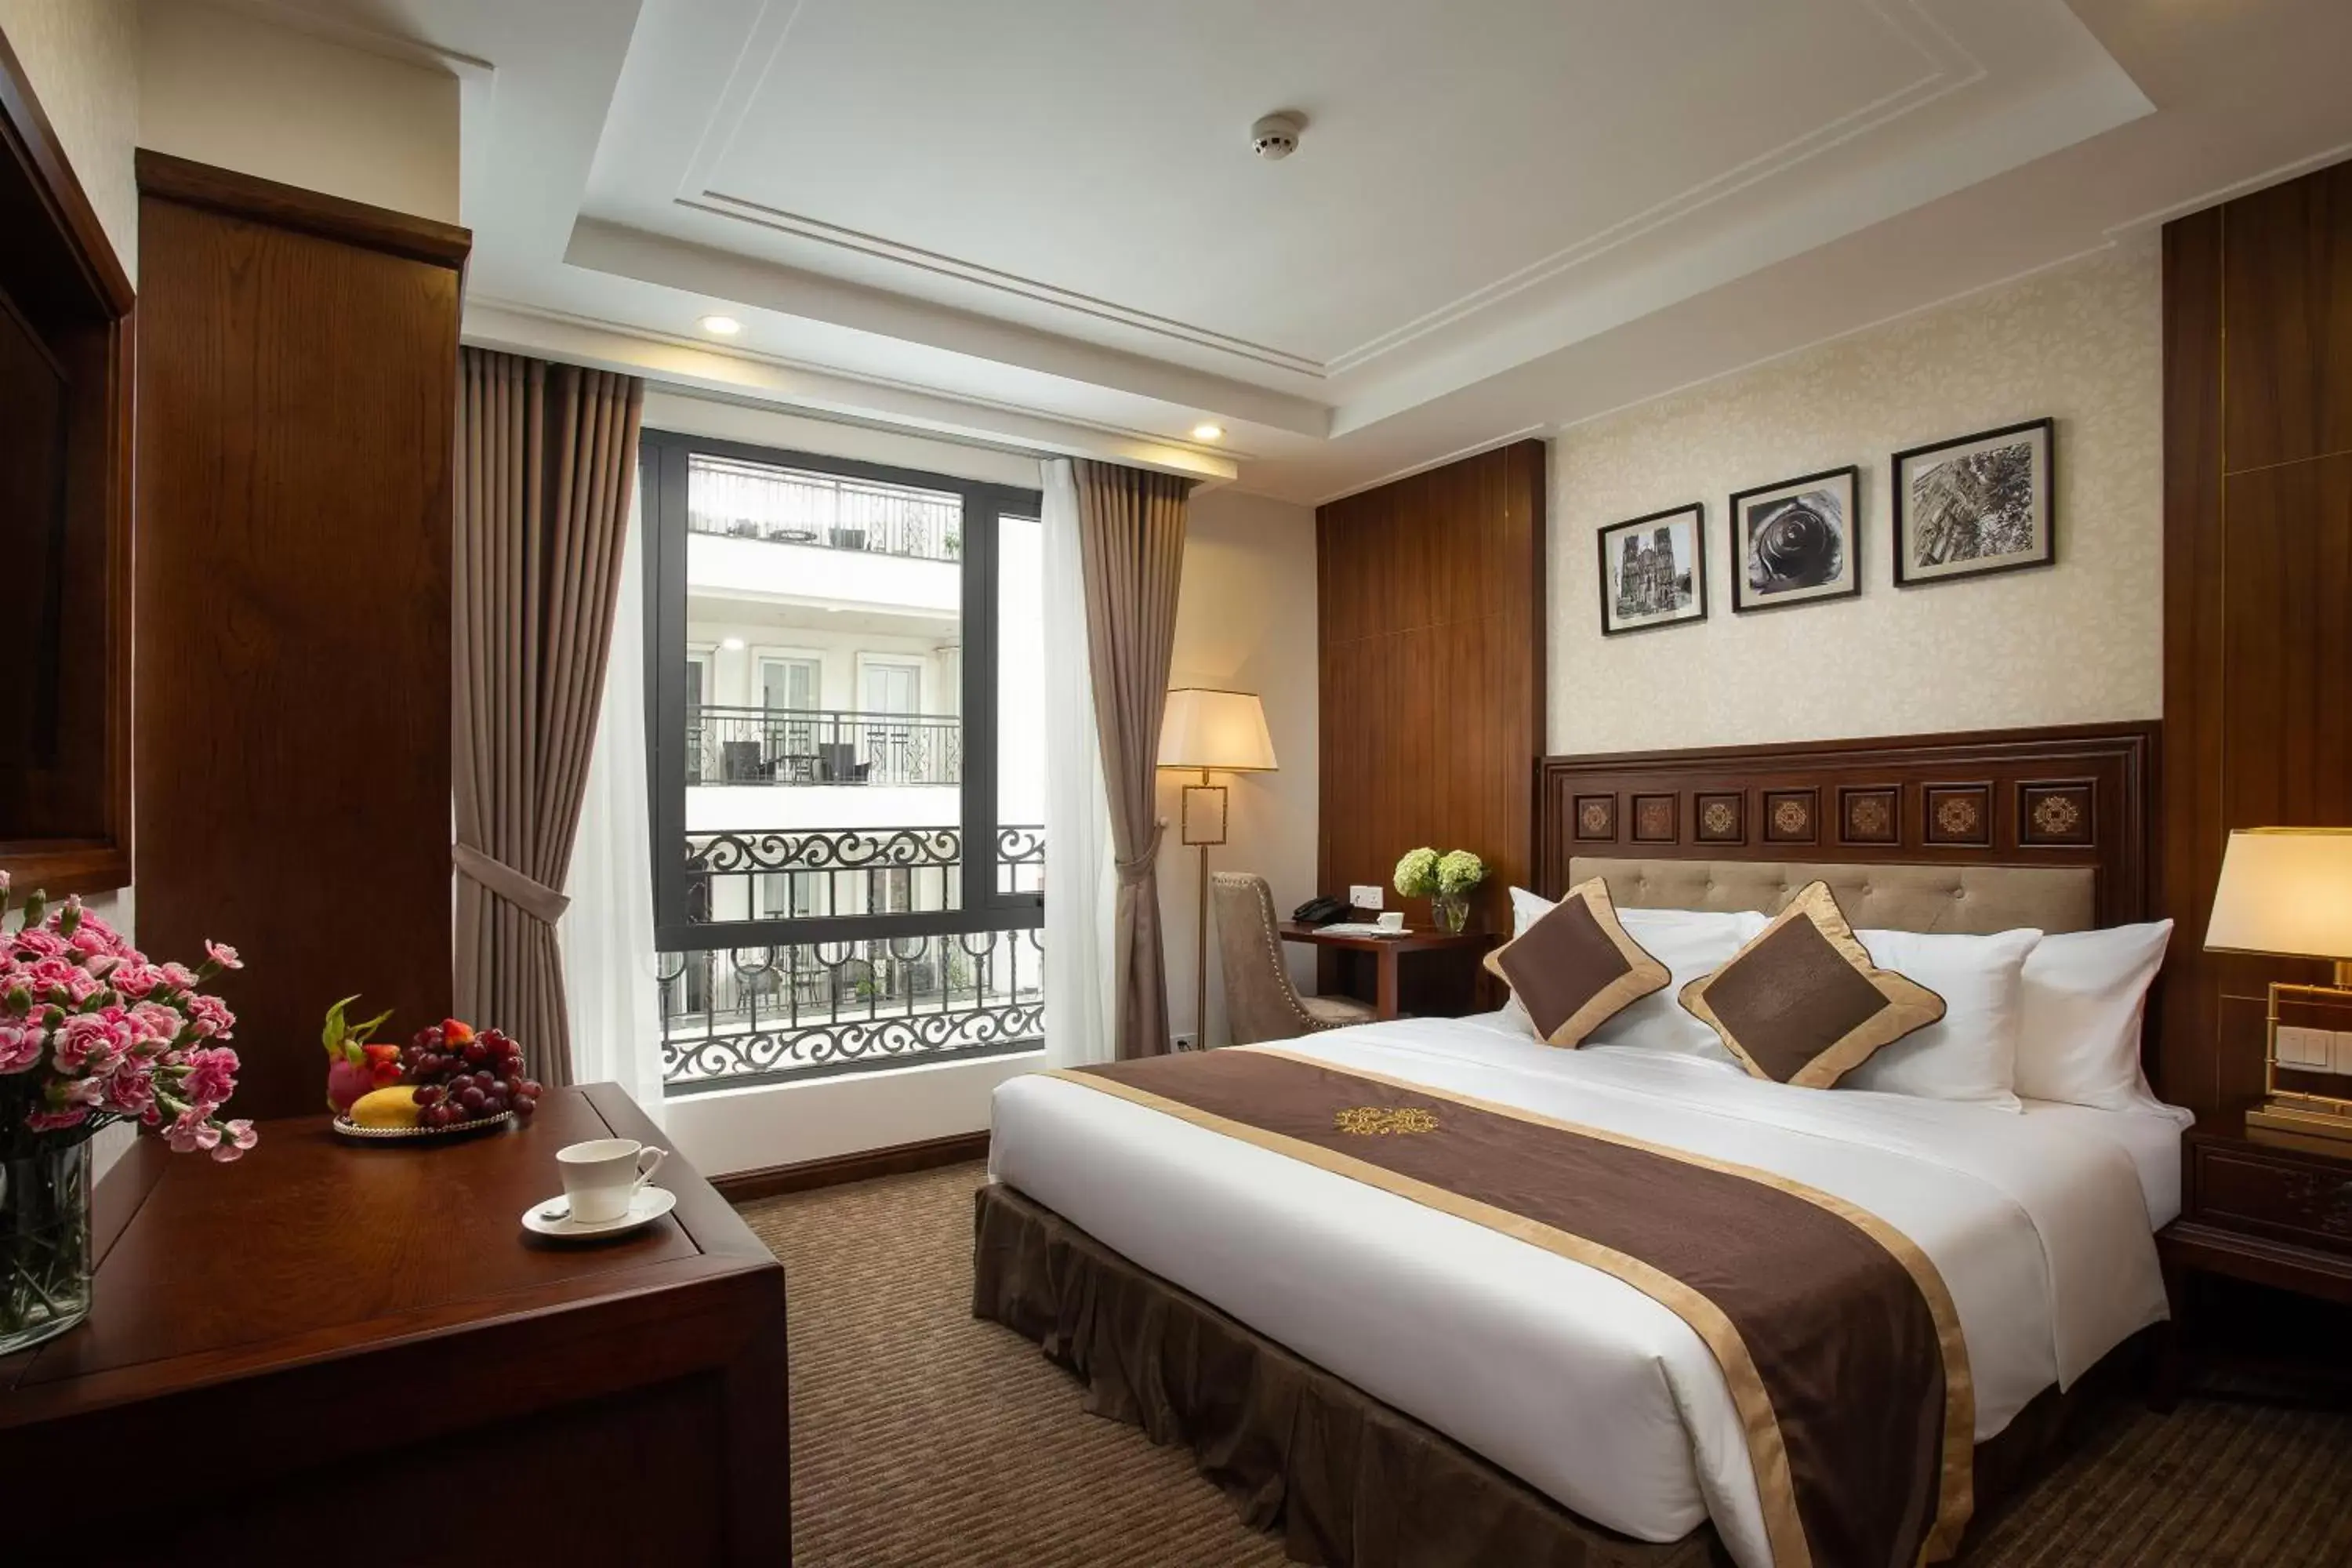 Shower, Bed in Rex Hanoi Hotel